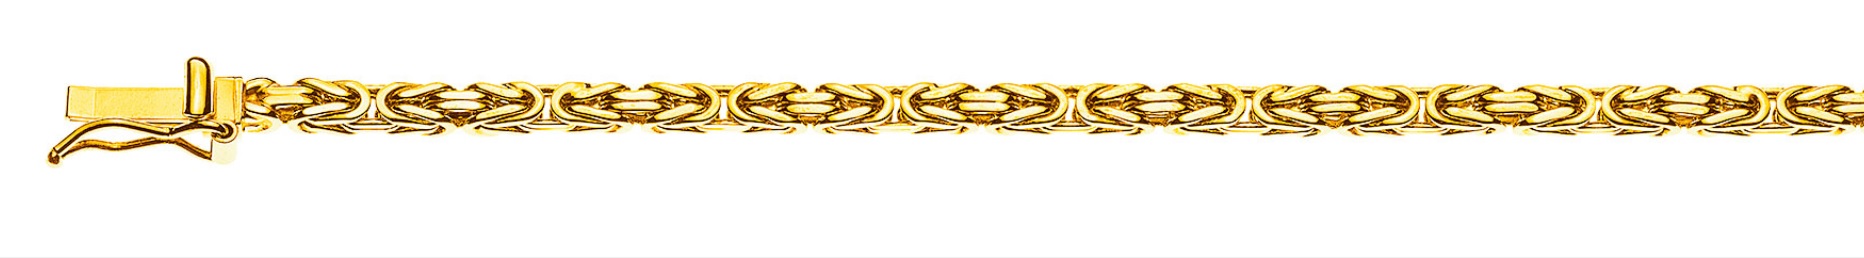 AURONOS Prestige Halskette Gelbgold 18K Königskette 45cm 2.5mm